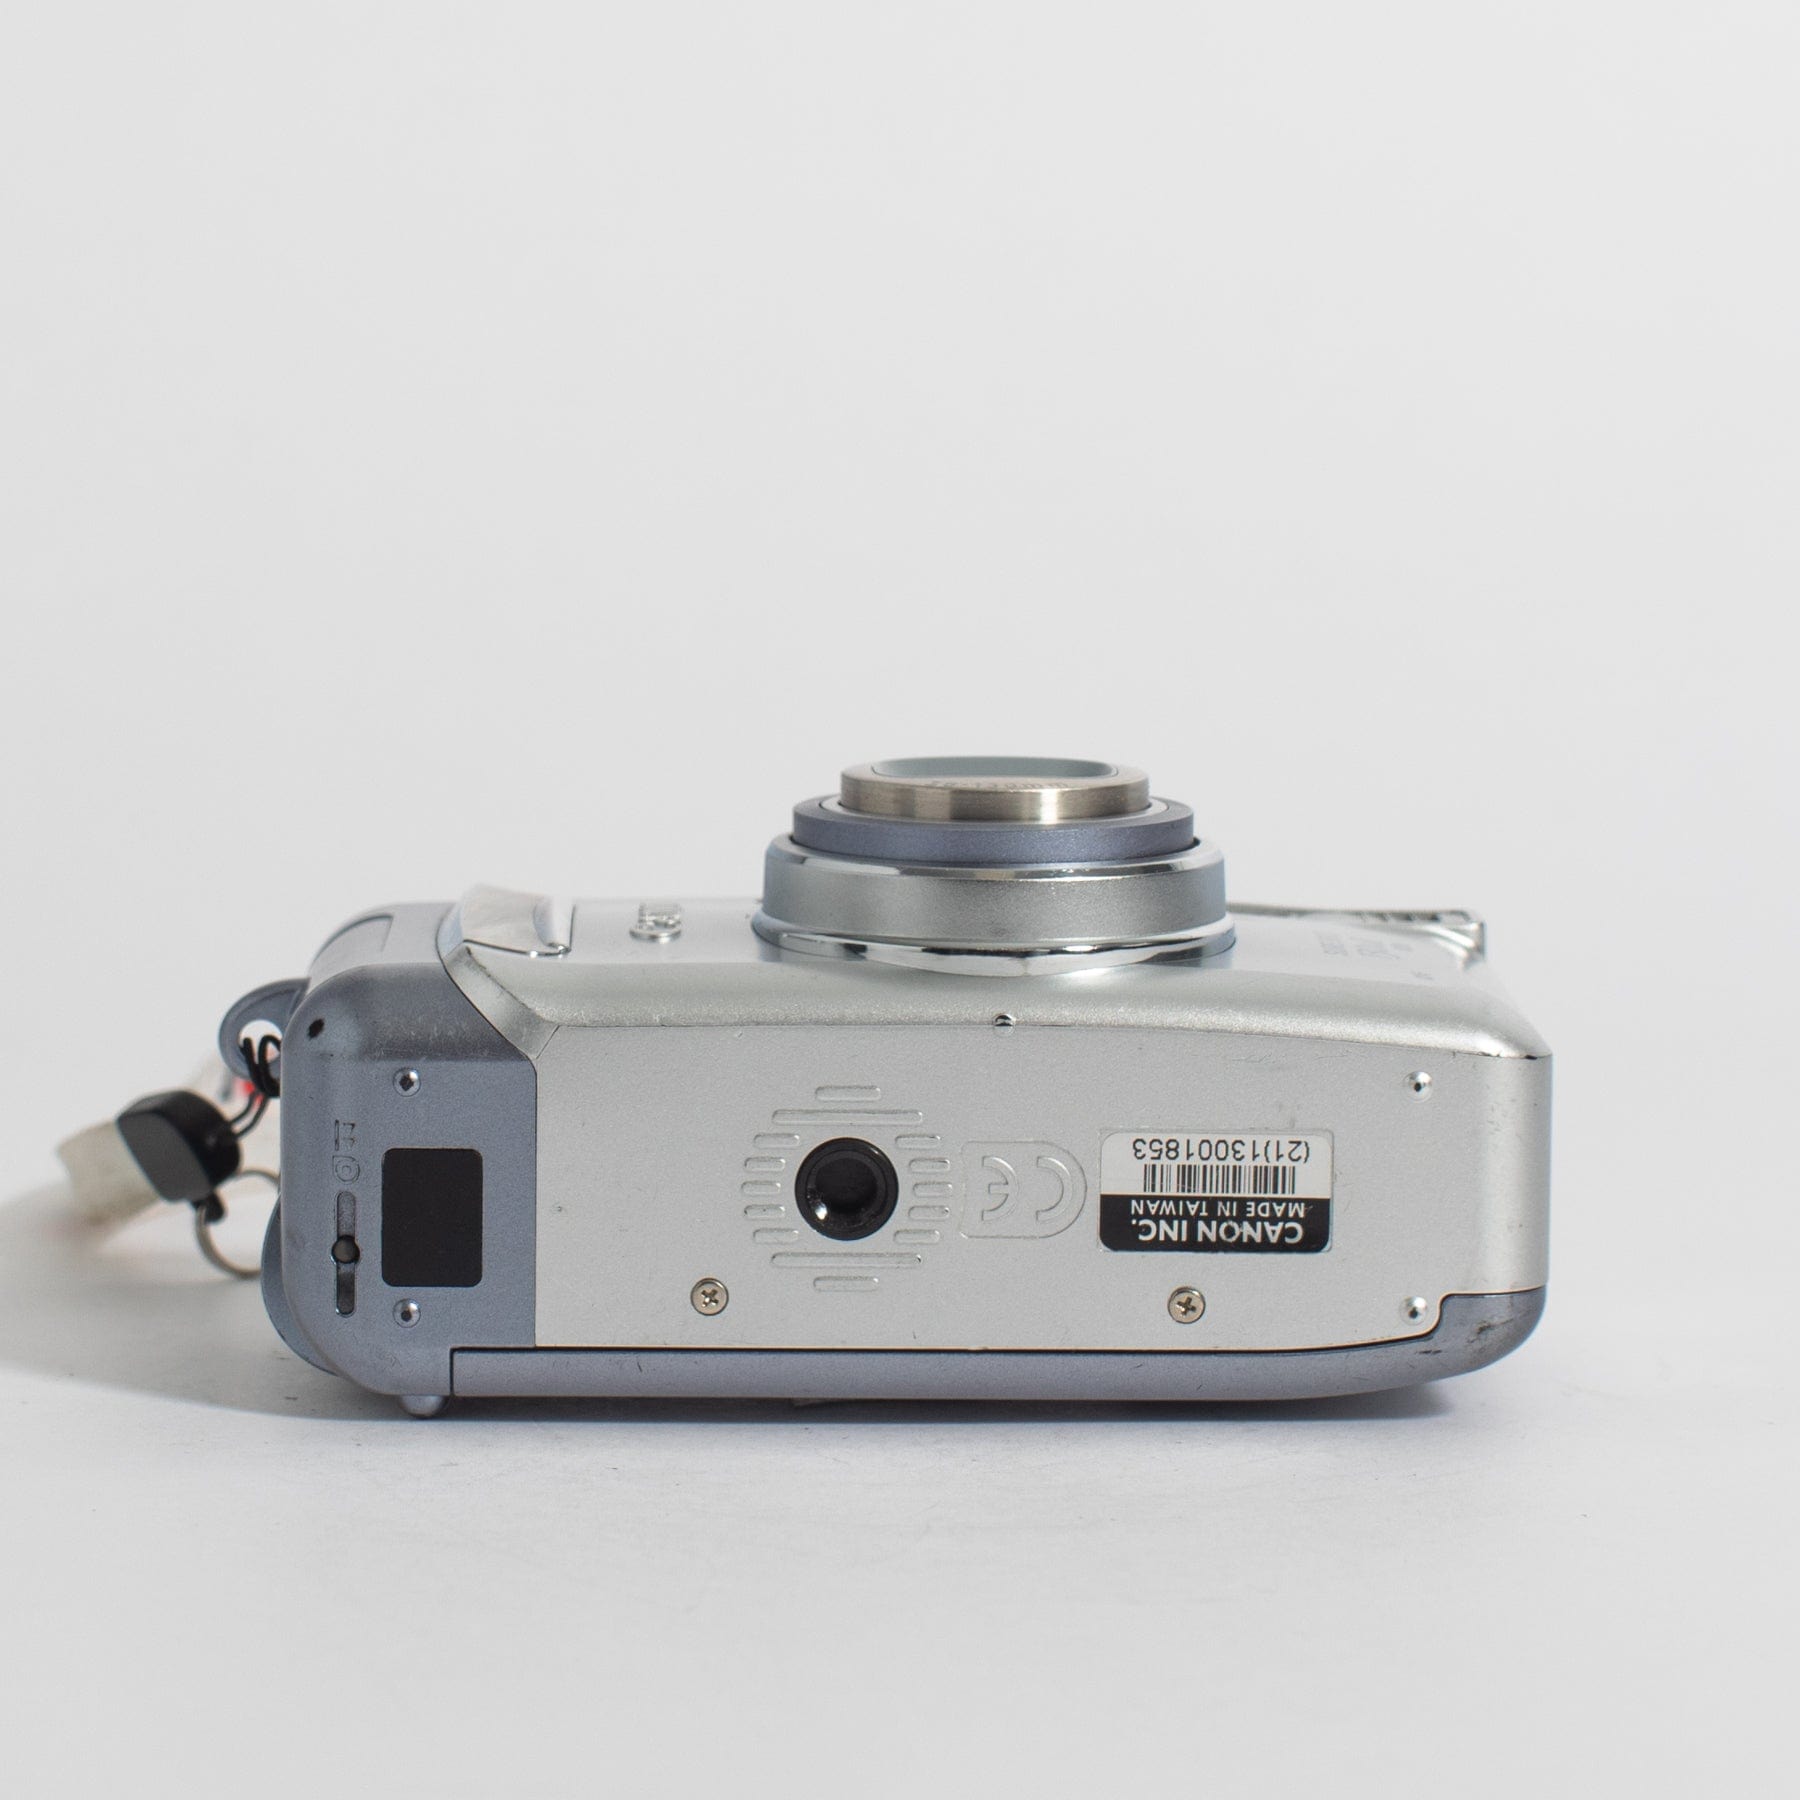 Canon SureShot130u II (or Autoboy N130 II) Dateback point and 